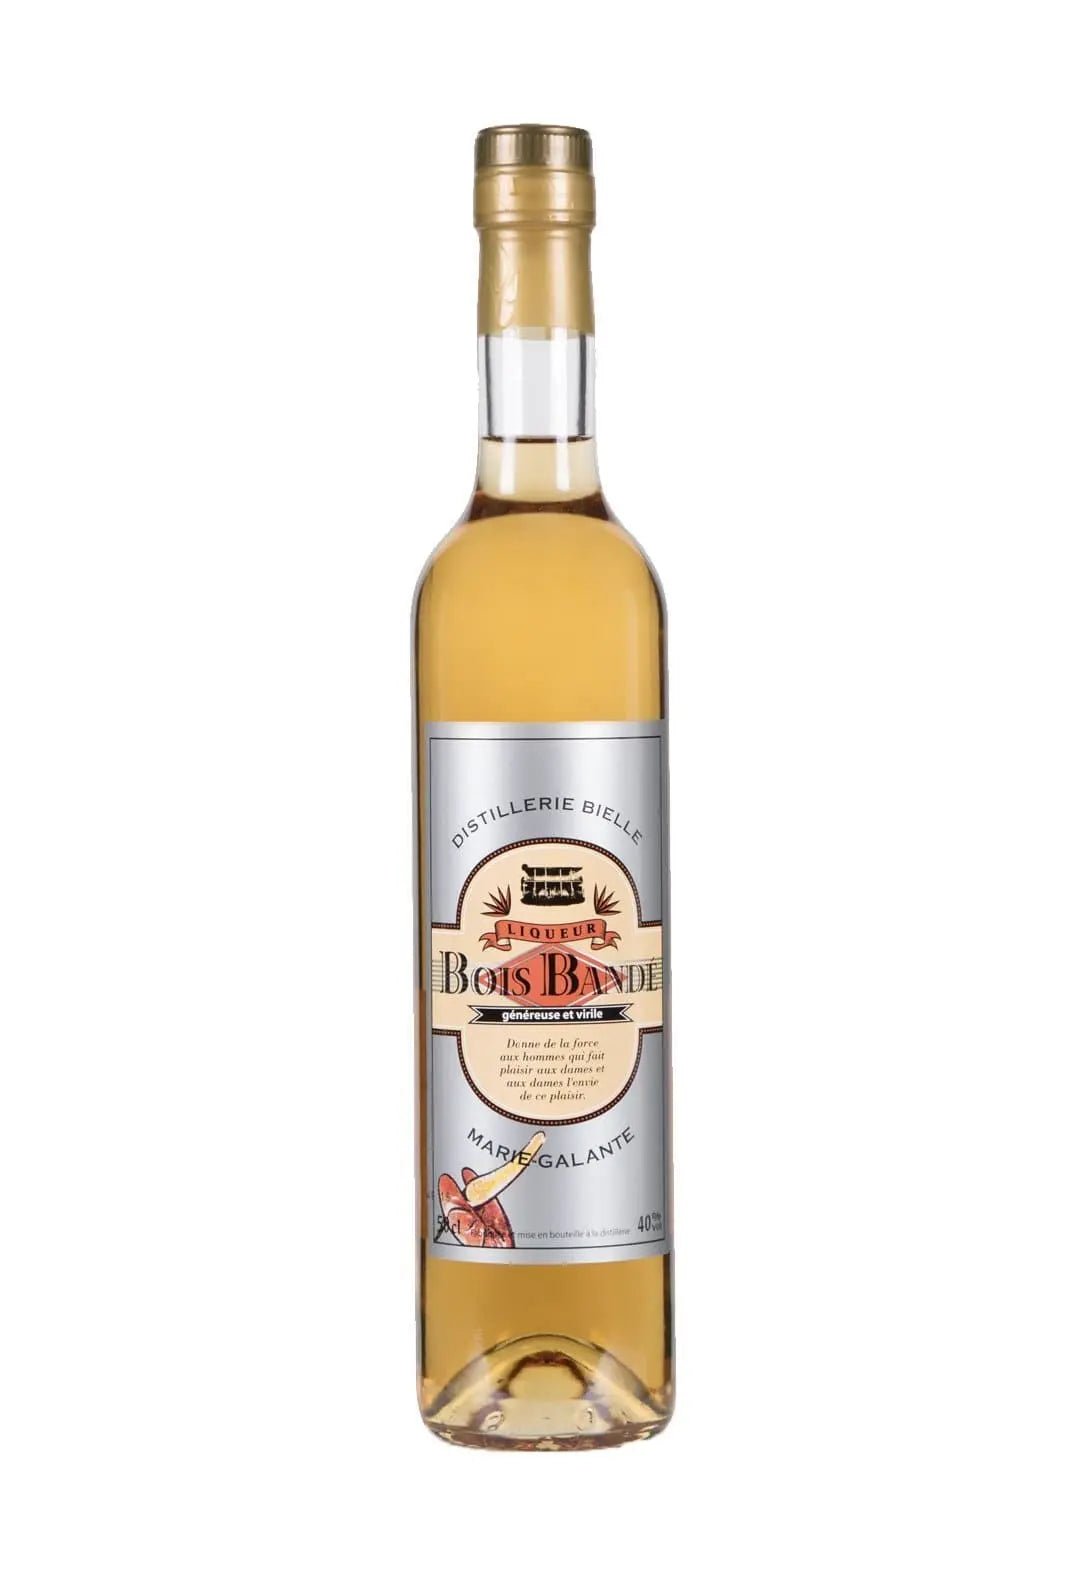 Bielle Liqueur de Rhum 'Bois Bande' (Agricole rum liqueur) 40% 500ml - Liqueurs - Liquor Wine Cave